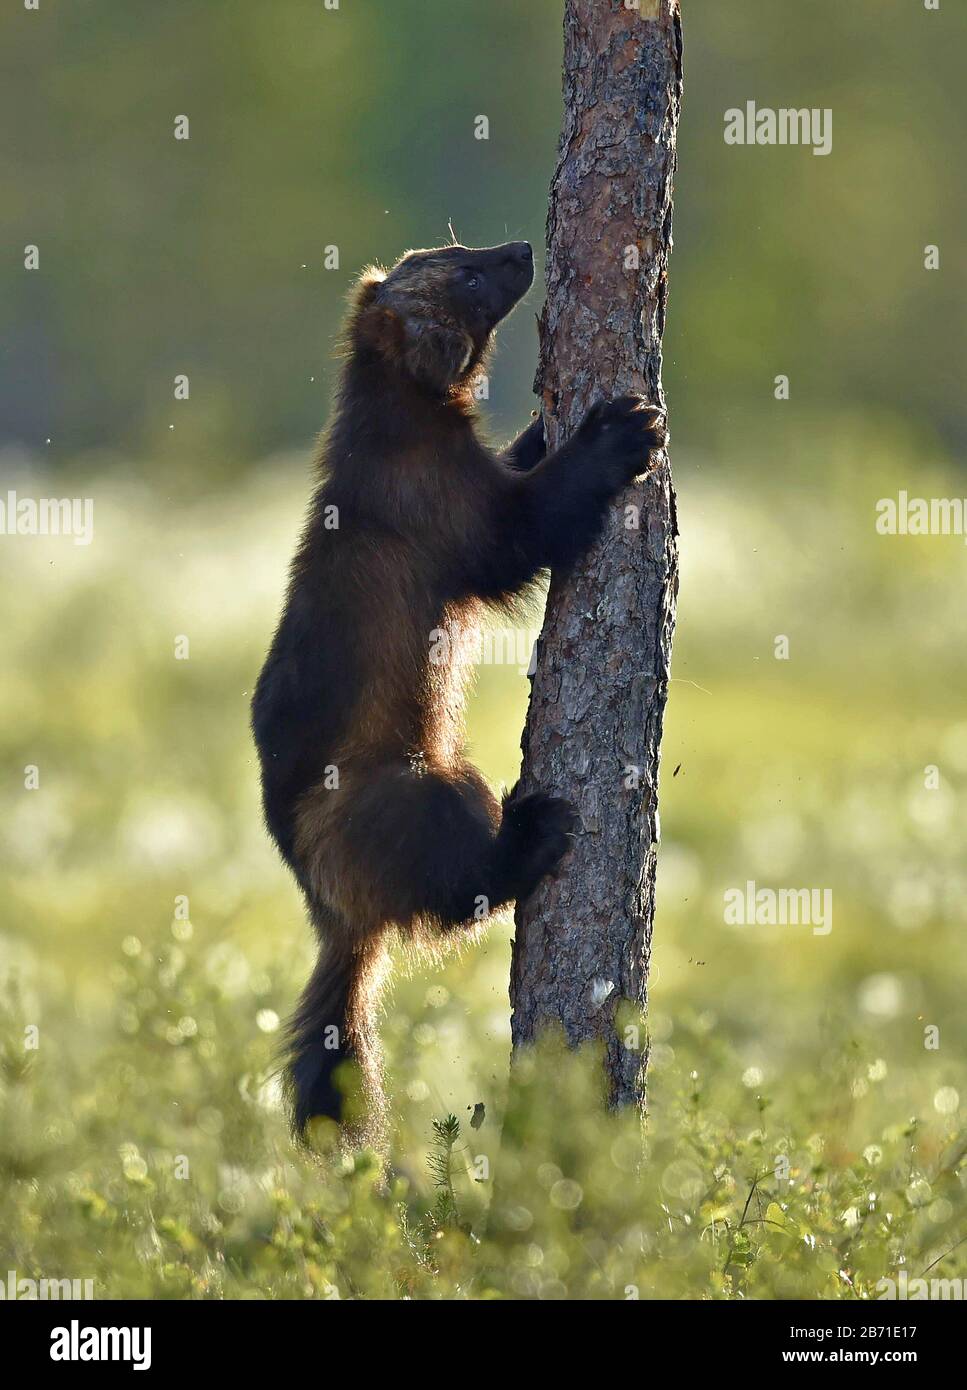 Wolverine grimpant sur l'arbre. Nature sauvage. Habitat naturel. Fessio, carcajou, ours de mouffette ou hachures rapides. Nom scientifique: Gulo gulo Banque D'Images